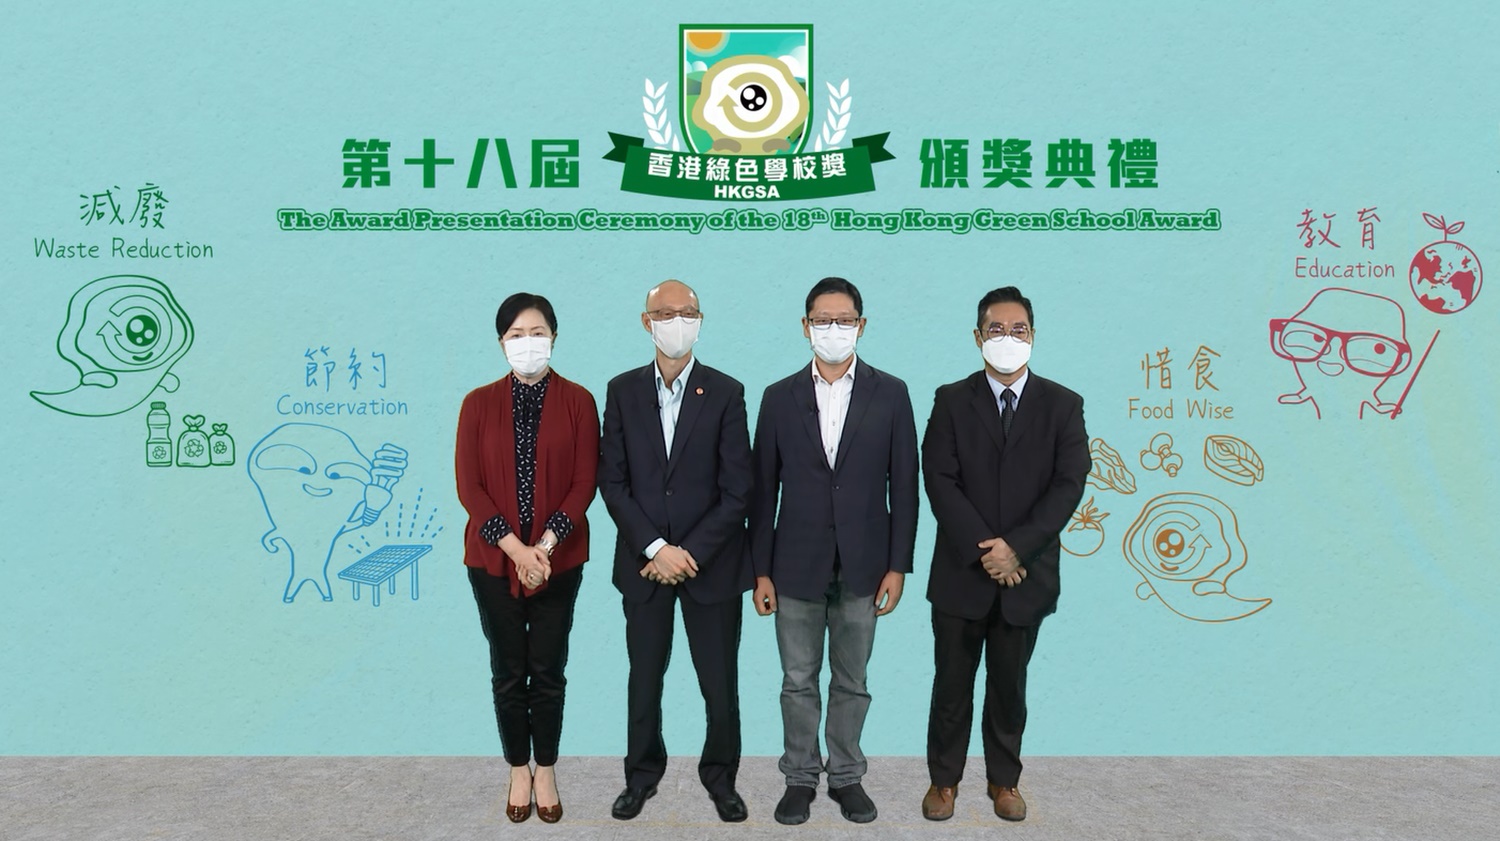 「第十八屆香港綠色學校獎」頒獎典禮